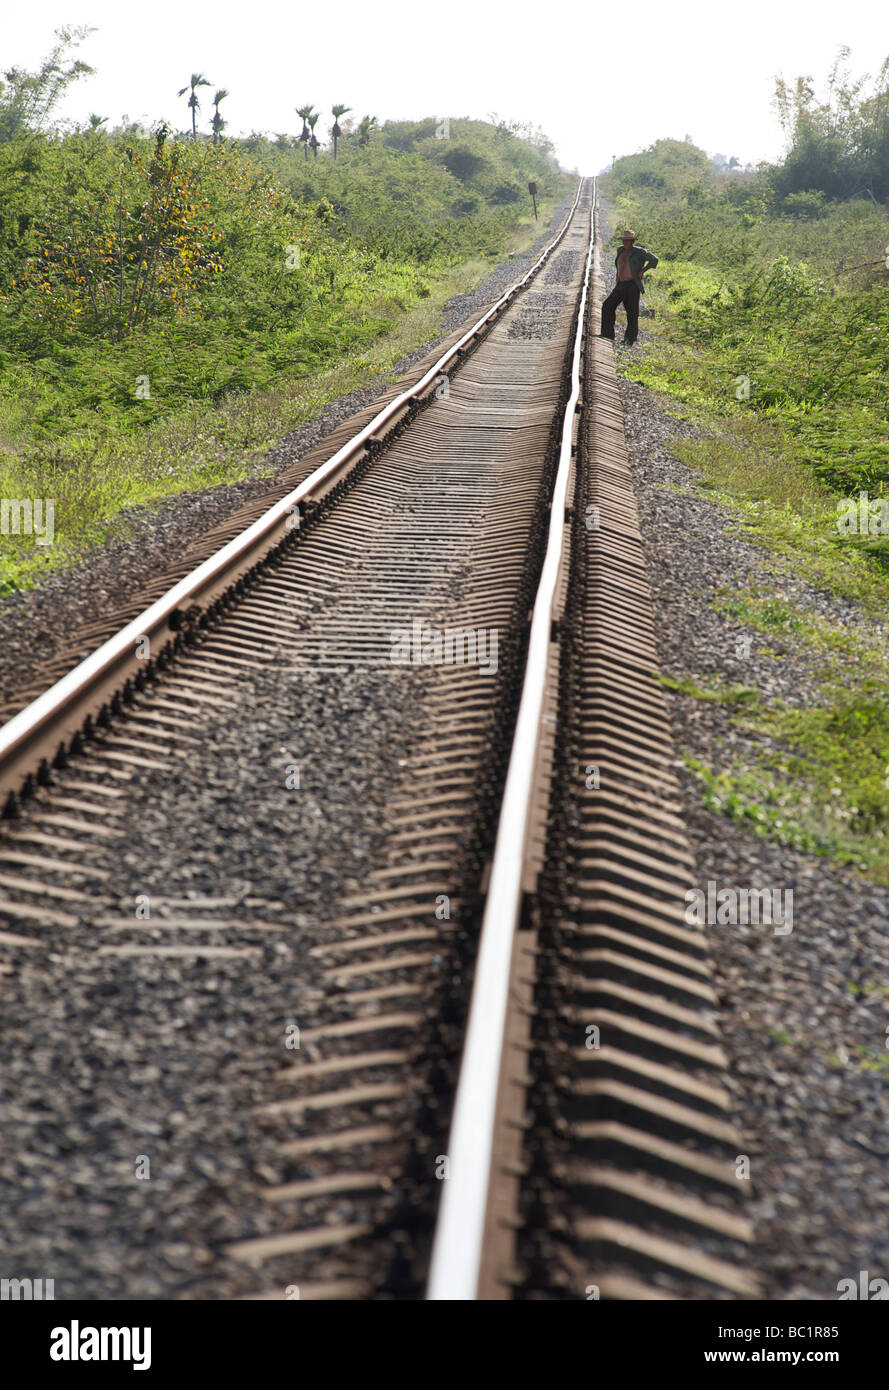 Cubano tracce ferroviarie convergenti sull'orizzonte, Cuba Foto Stock